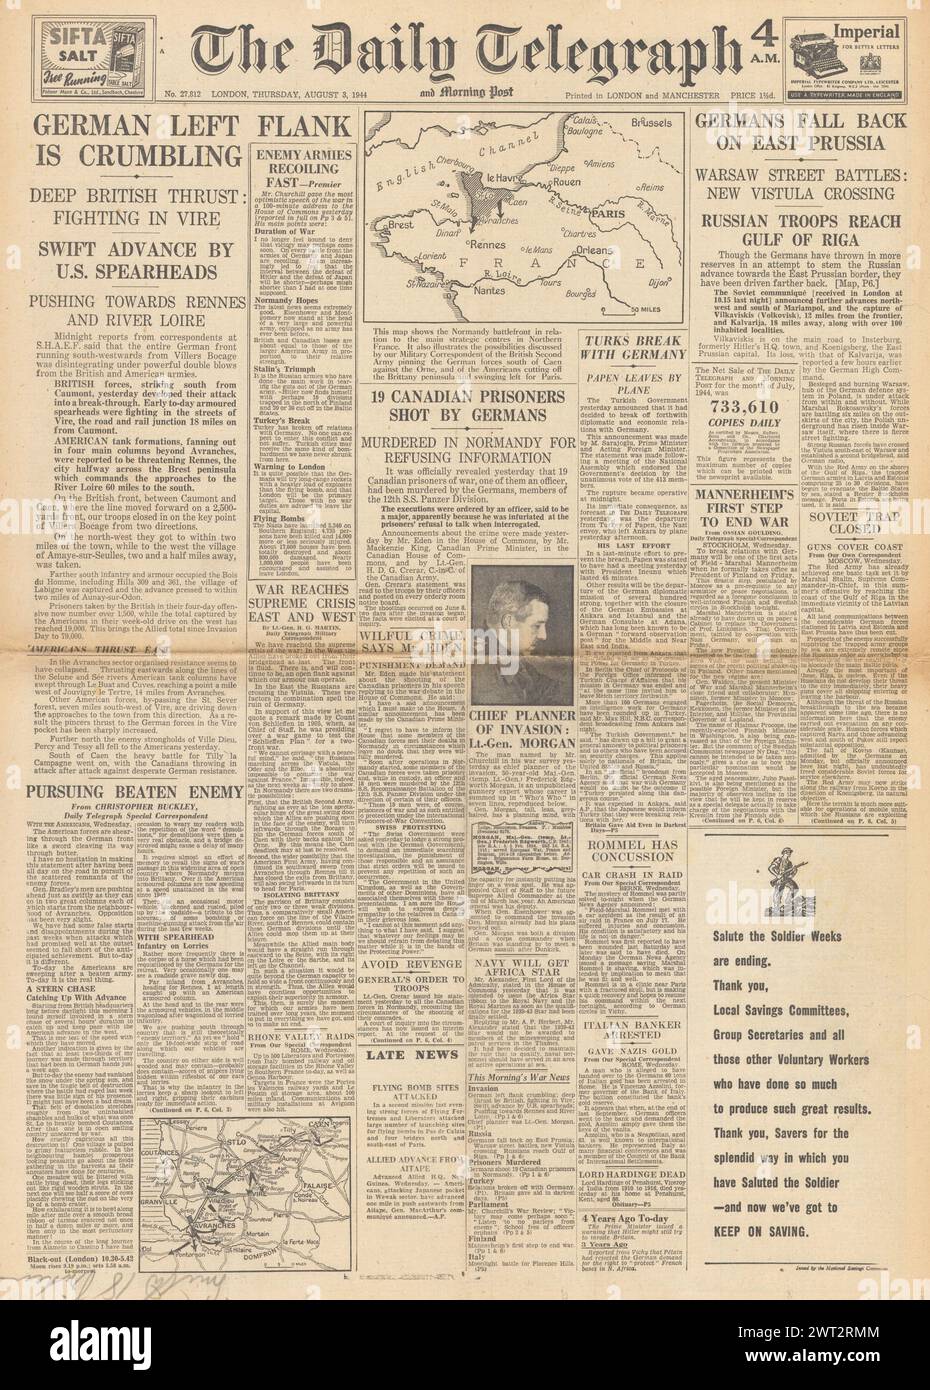 1944 die Titelseite des Daily Telegraph berichtet über die britische Armee in Vire, die Rote Armee erreicht die Ostseeküste, den Warschauer Aufstand und kanadische Kriegsgefangene, die von der 12. SS in der Normandie erschossen wurden Stockfoto